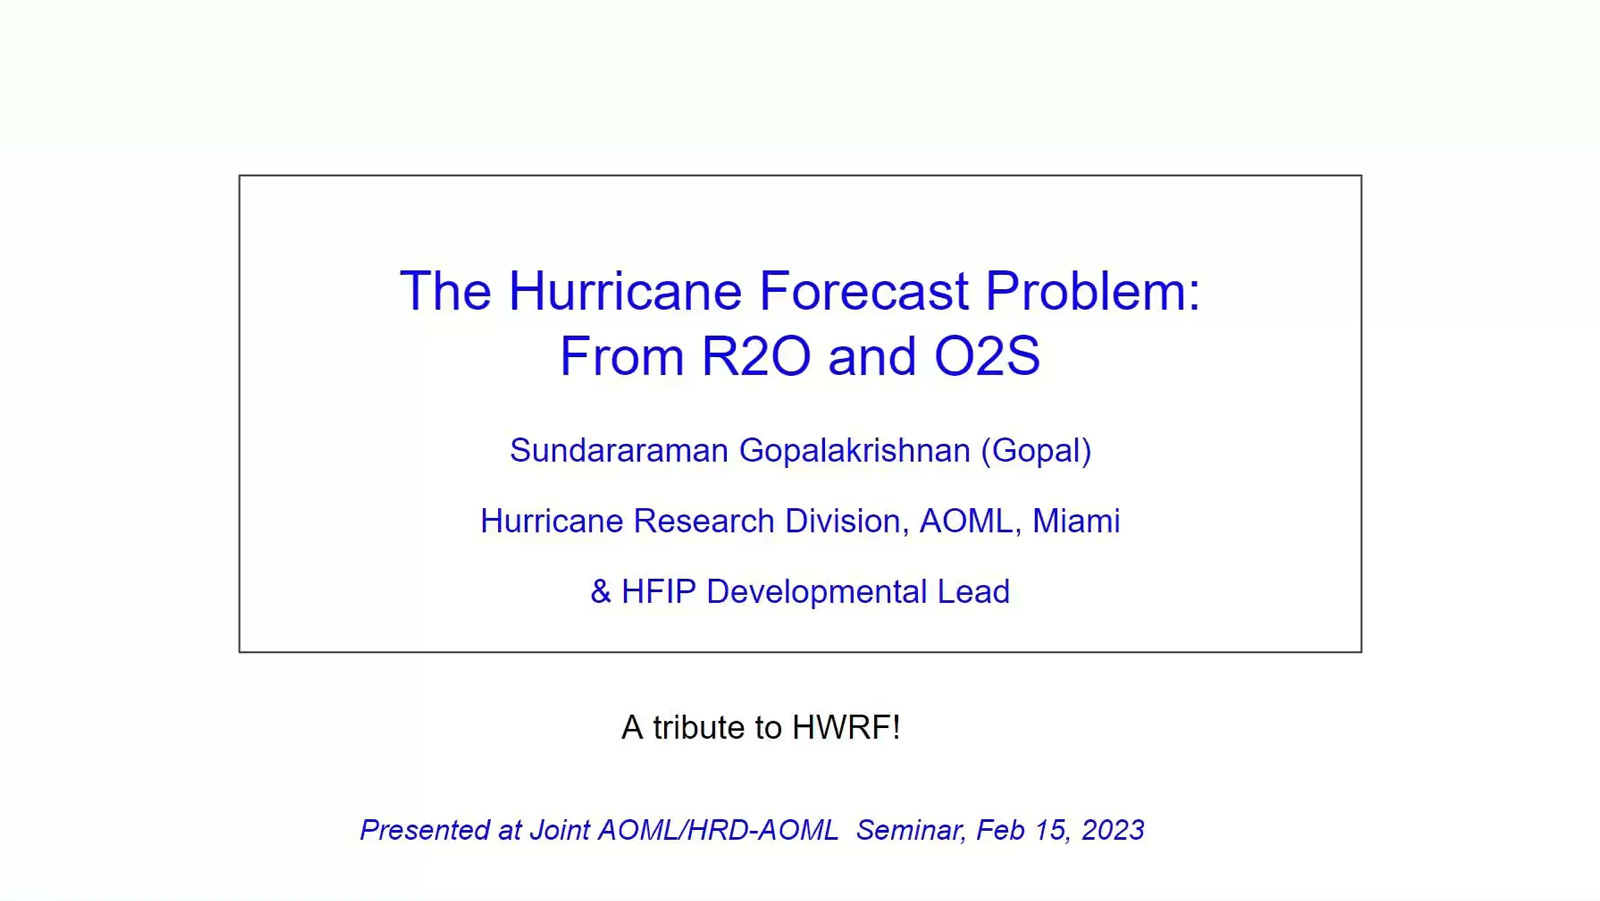 Image of Diapositiva del título de la charla del seminario: 